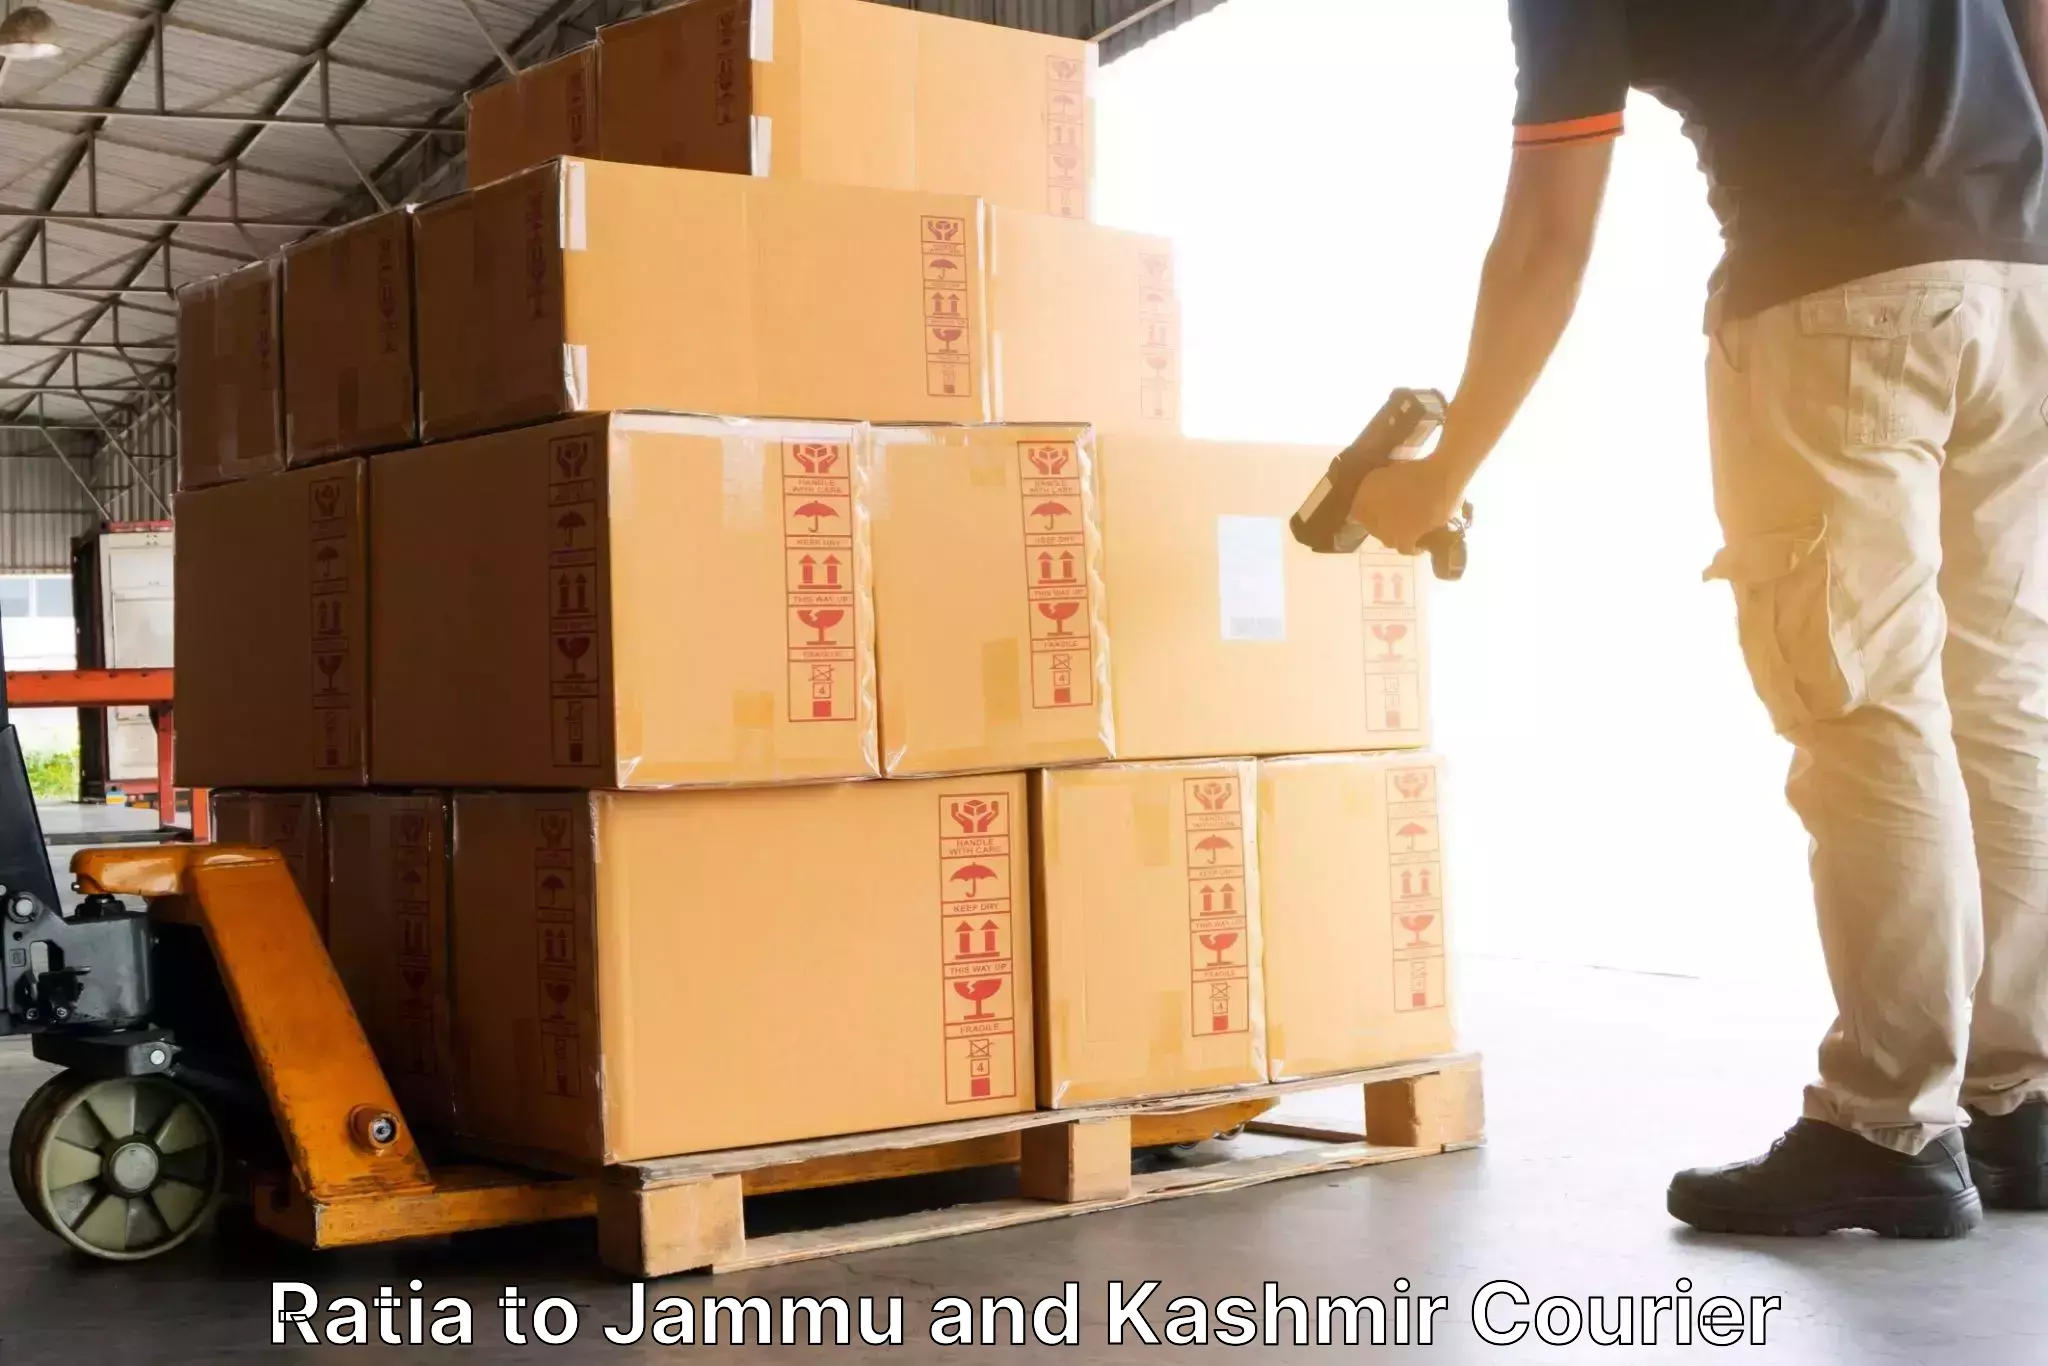 Express logistics providers Ratia to NIT Srinagar